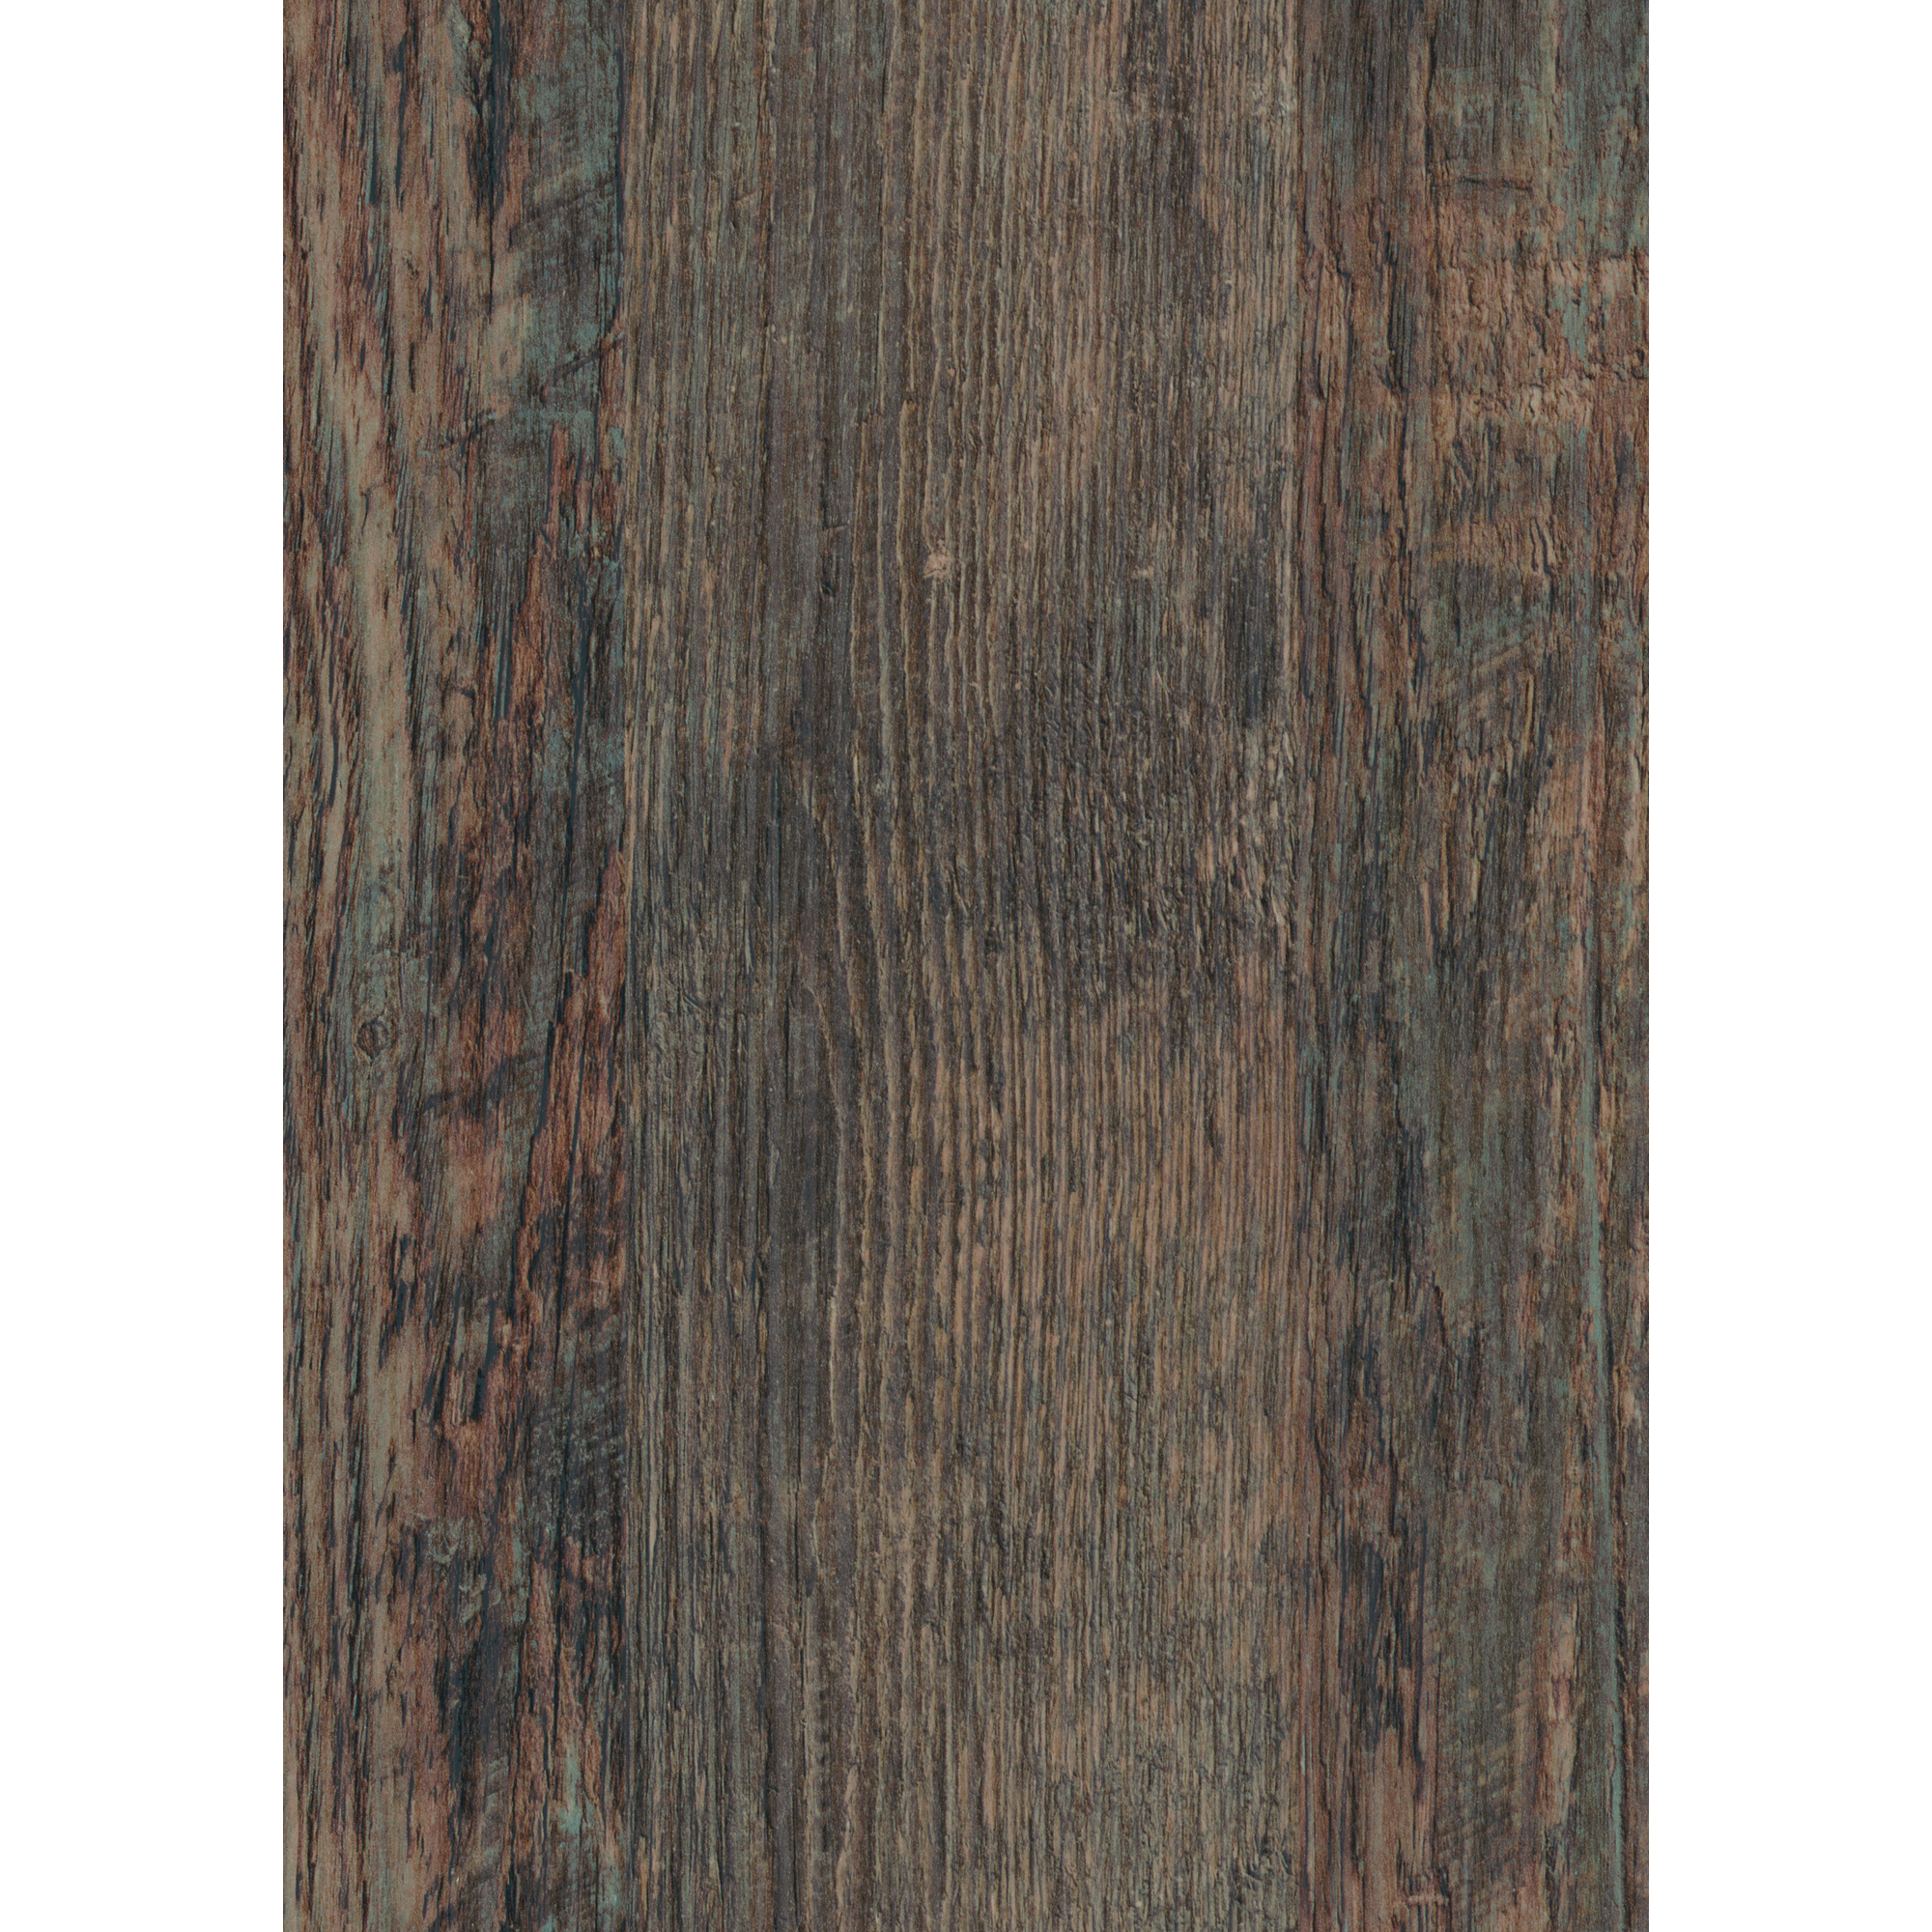 Arbeitsplatte '34318' Laramie-Pine 280 x 60 x 2,8 cm + product picture